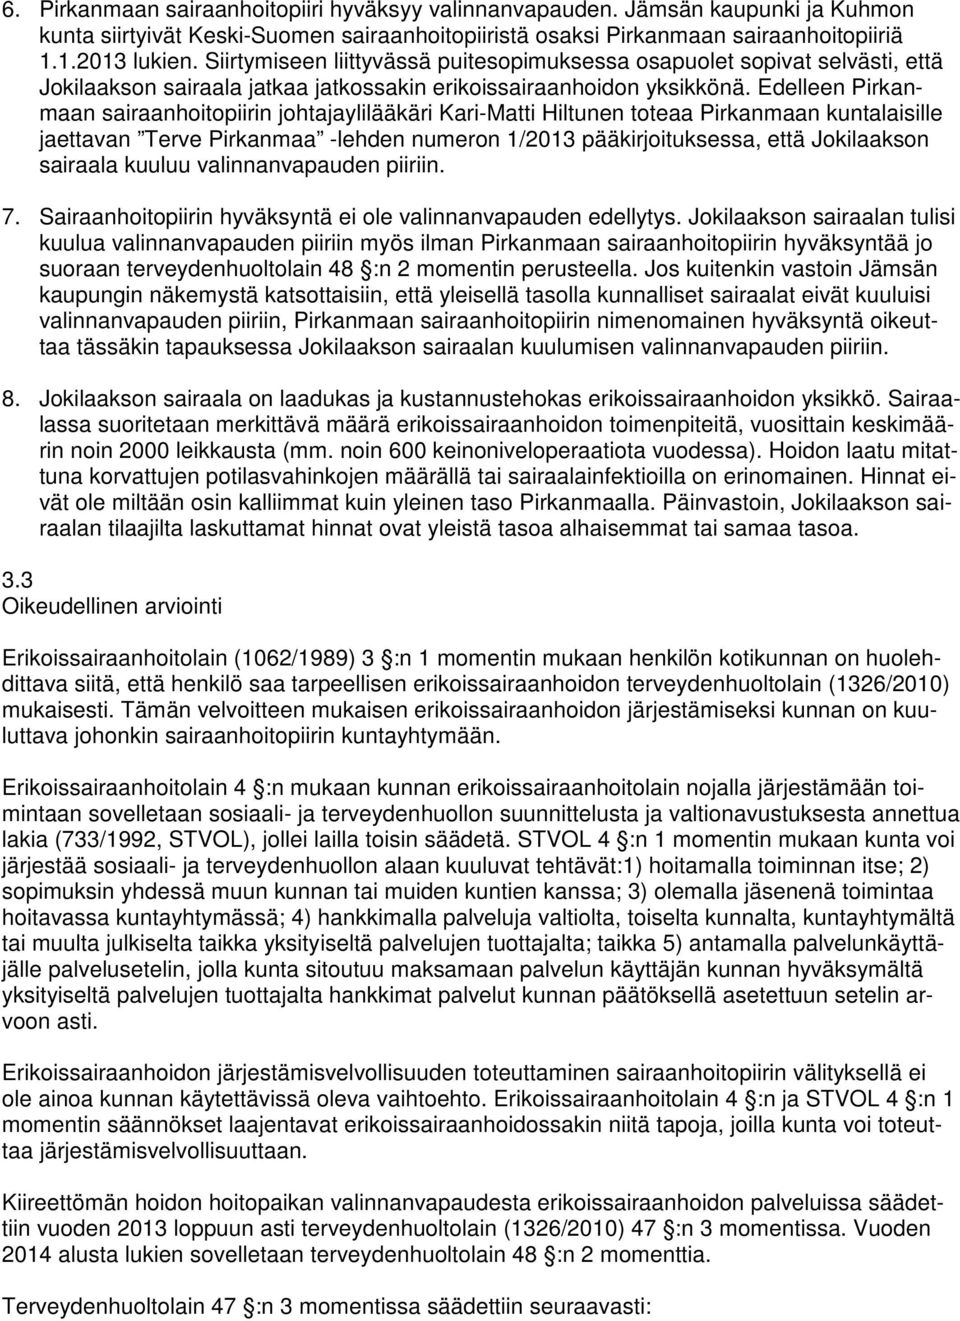 Edelleen Pirkanmaan sairaanhoitopiirin johtajaylilääkäri Kari-Matti Hiltunen toteaa Pirkanmaan kuntalaisille jaettavan Terve Pirkanmaa -lehden numeron 1/2013 pääkirjoituksessa, että Jokilaakson